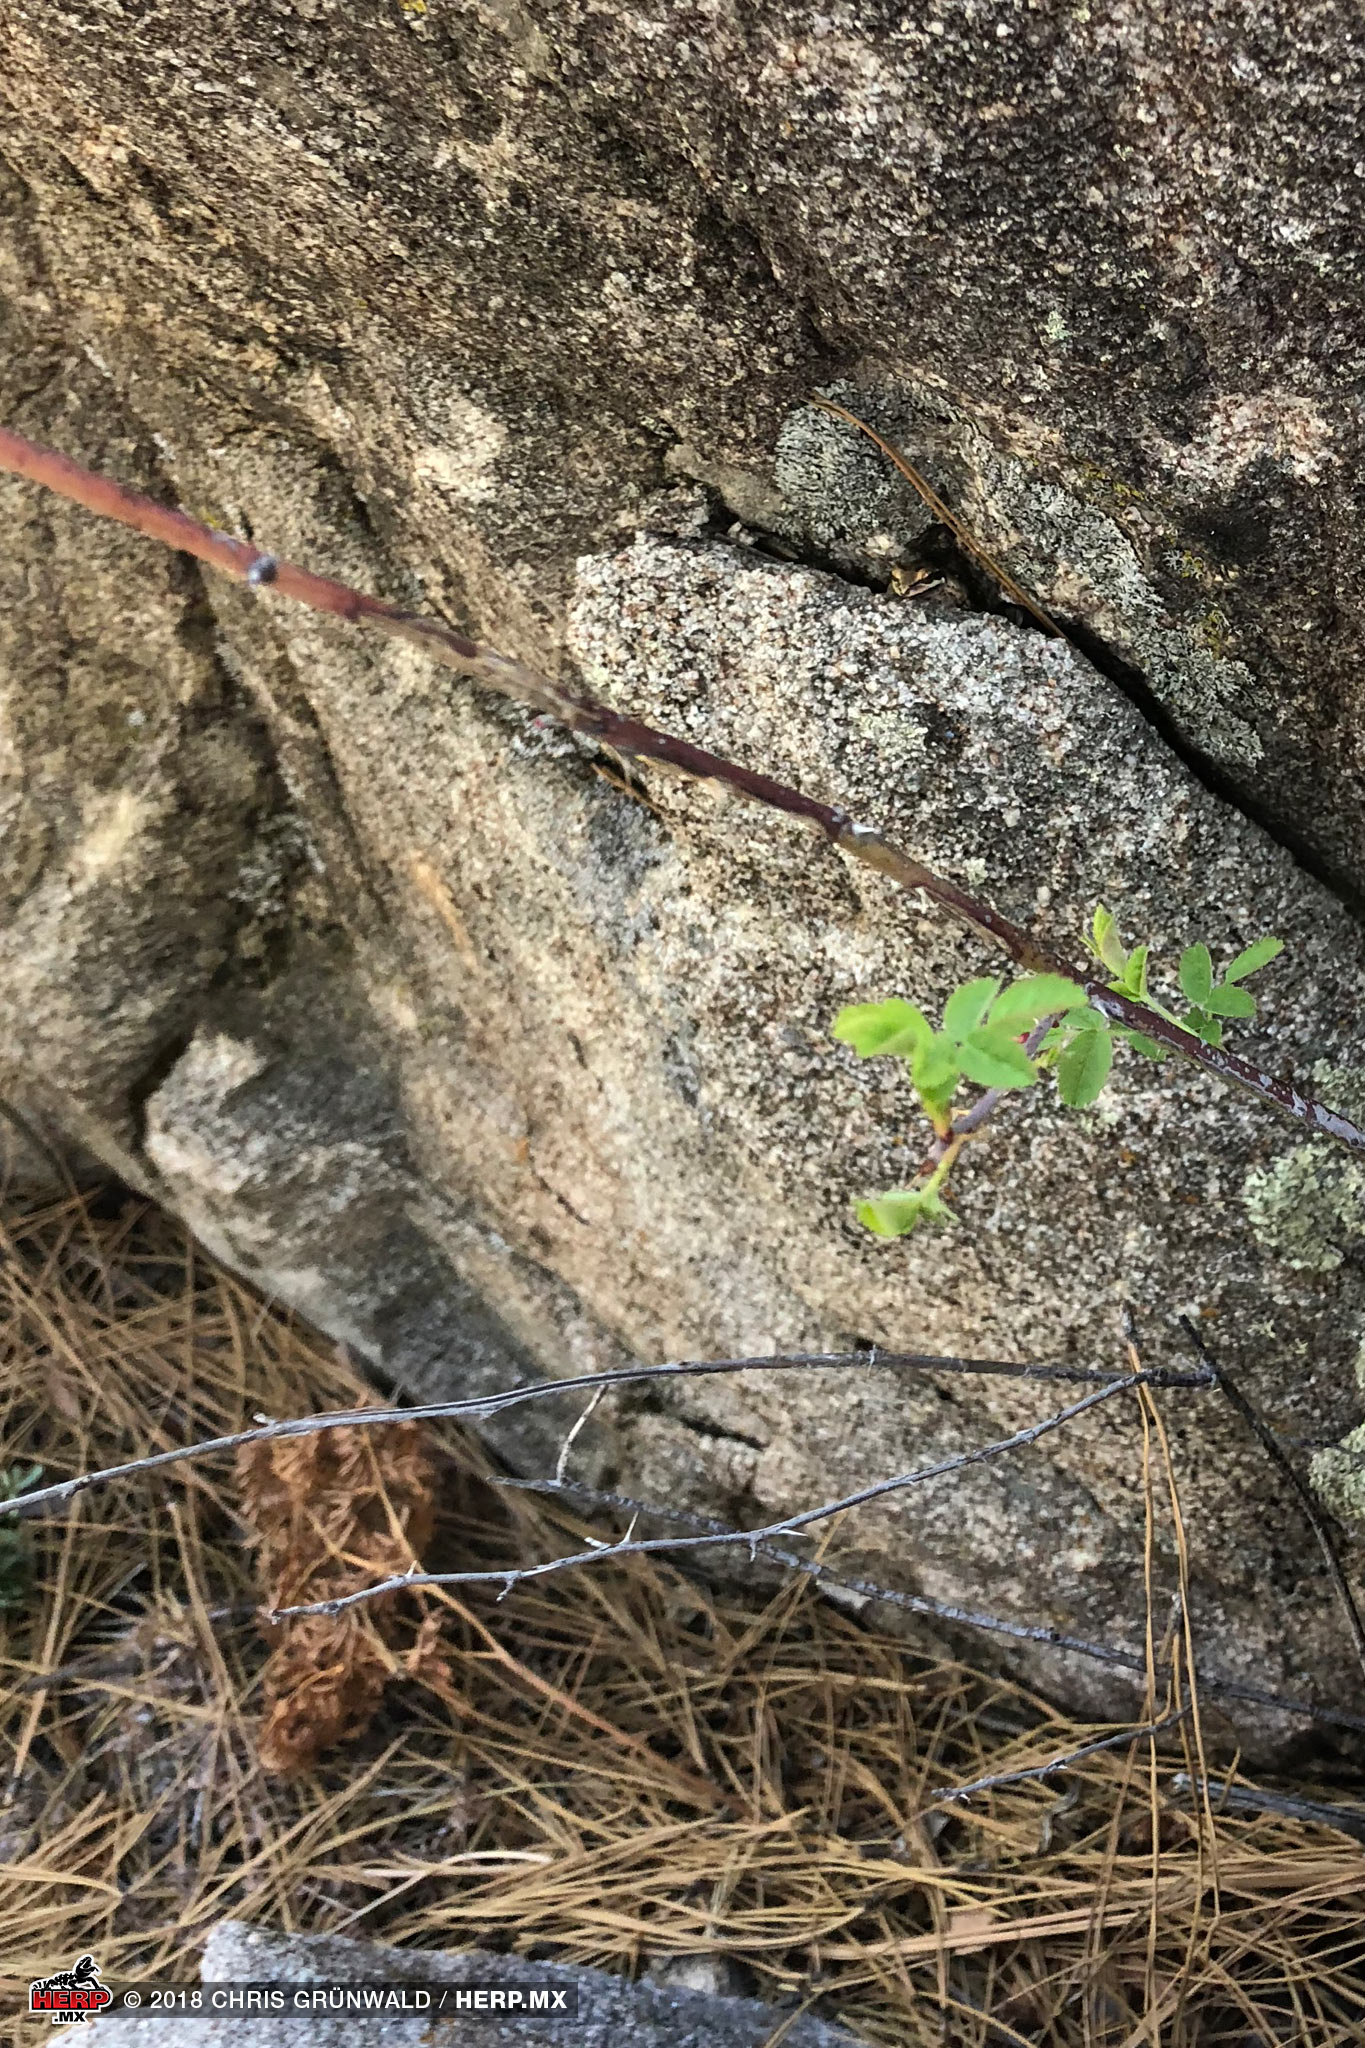 A Pacific Treefrog (<em>Pseudacris regilla</em>) seeks refuge in the crack of a granite boulder<br />© Chris Grünwald / HERP.MX